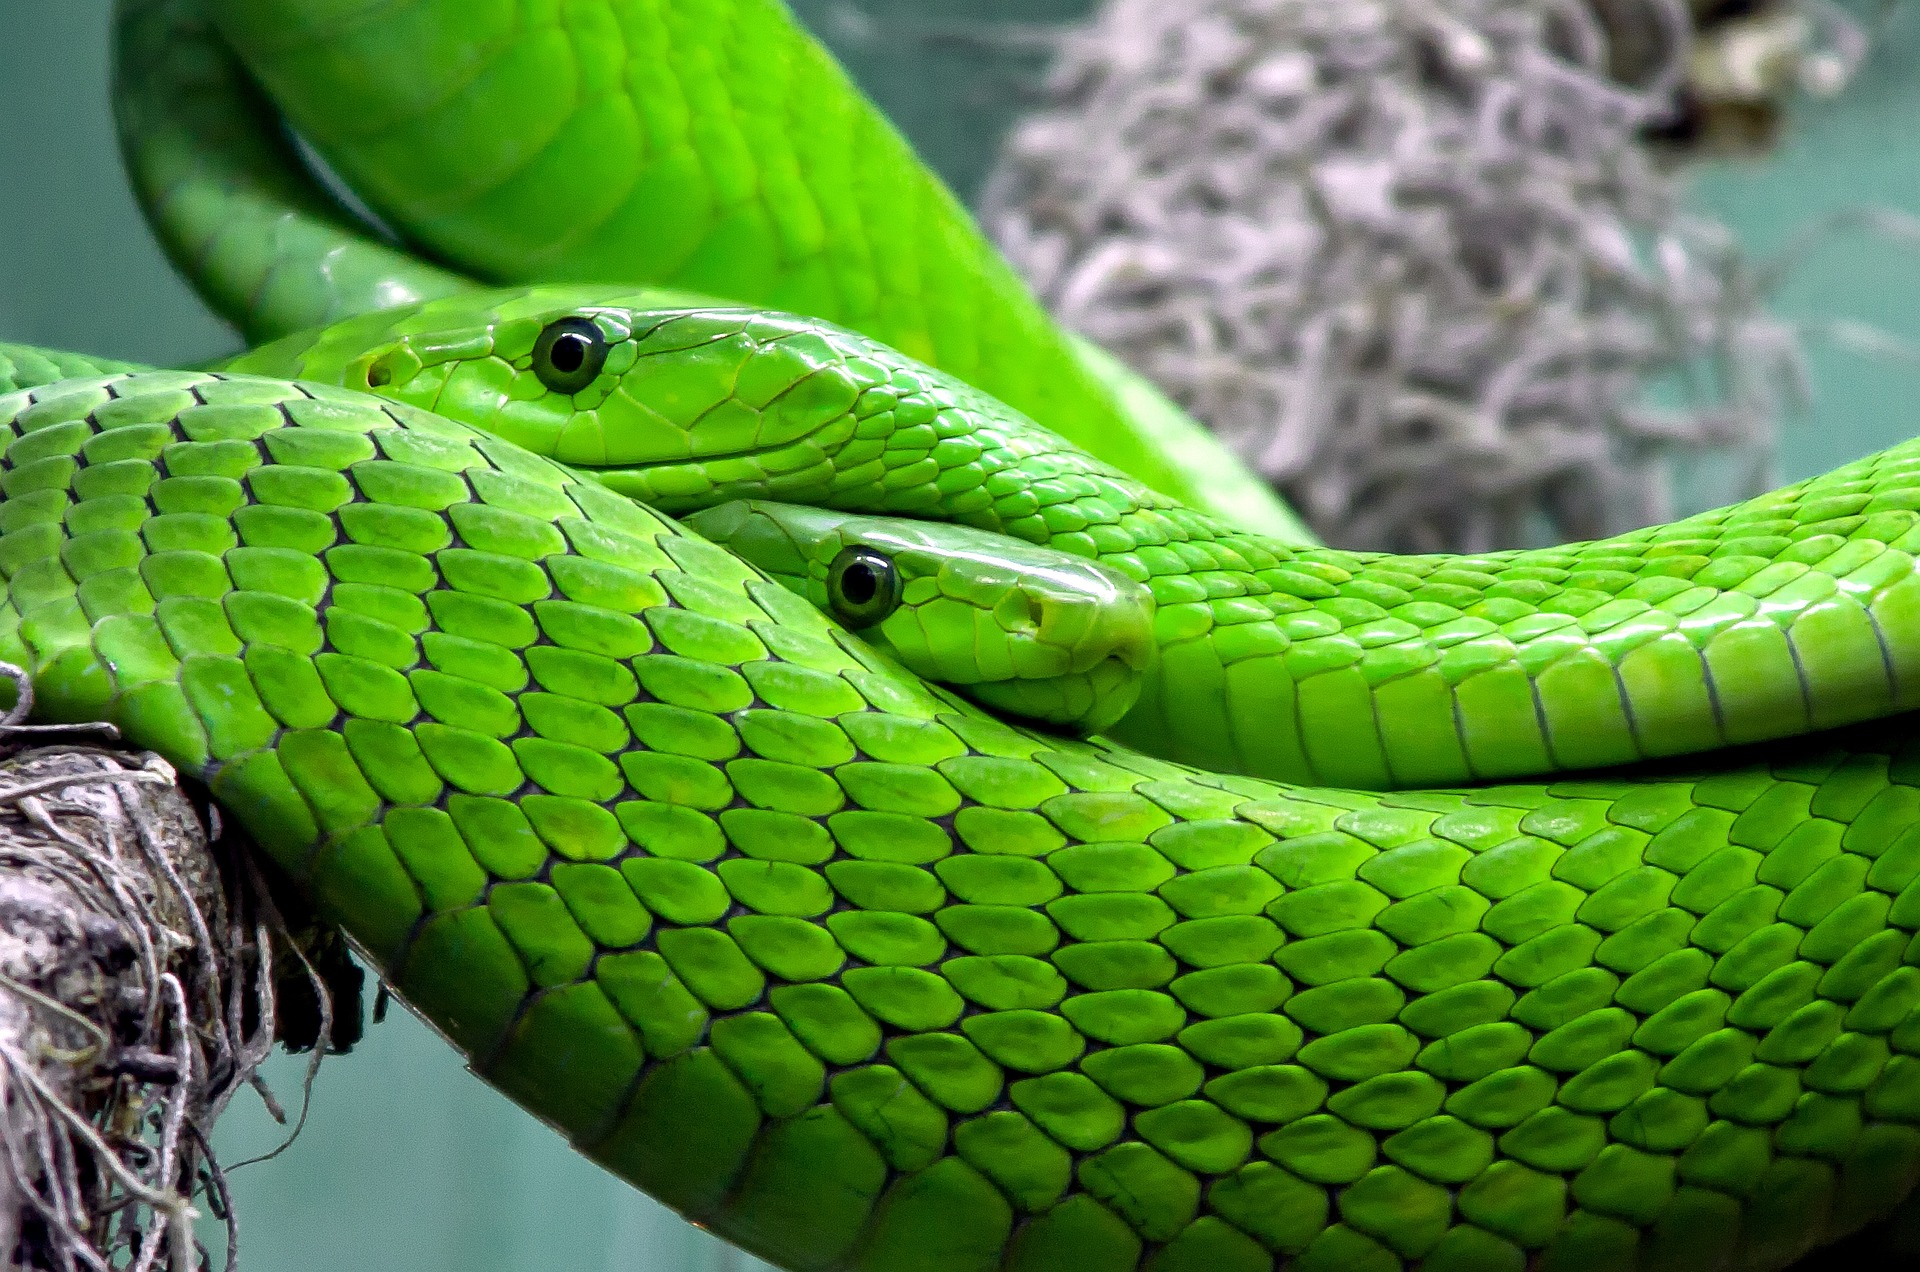 nejjedovatější hadi světa - mamba zelená